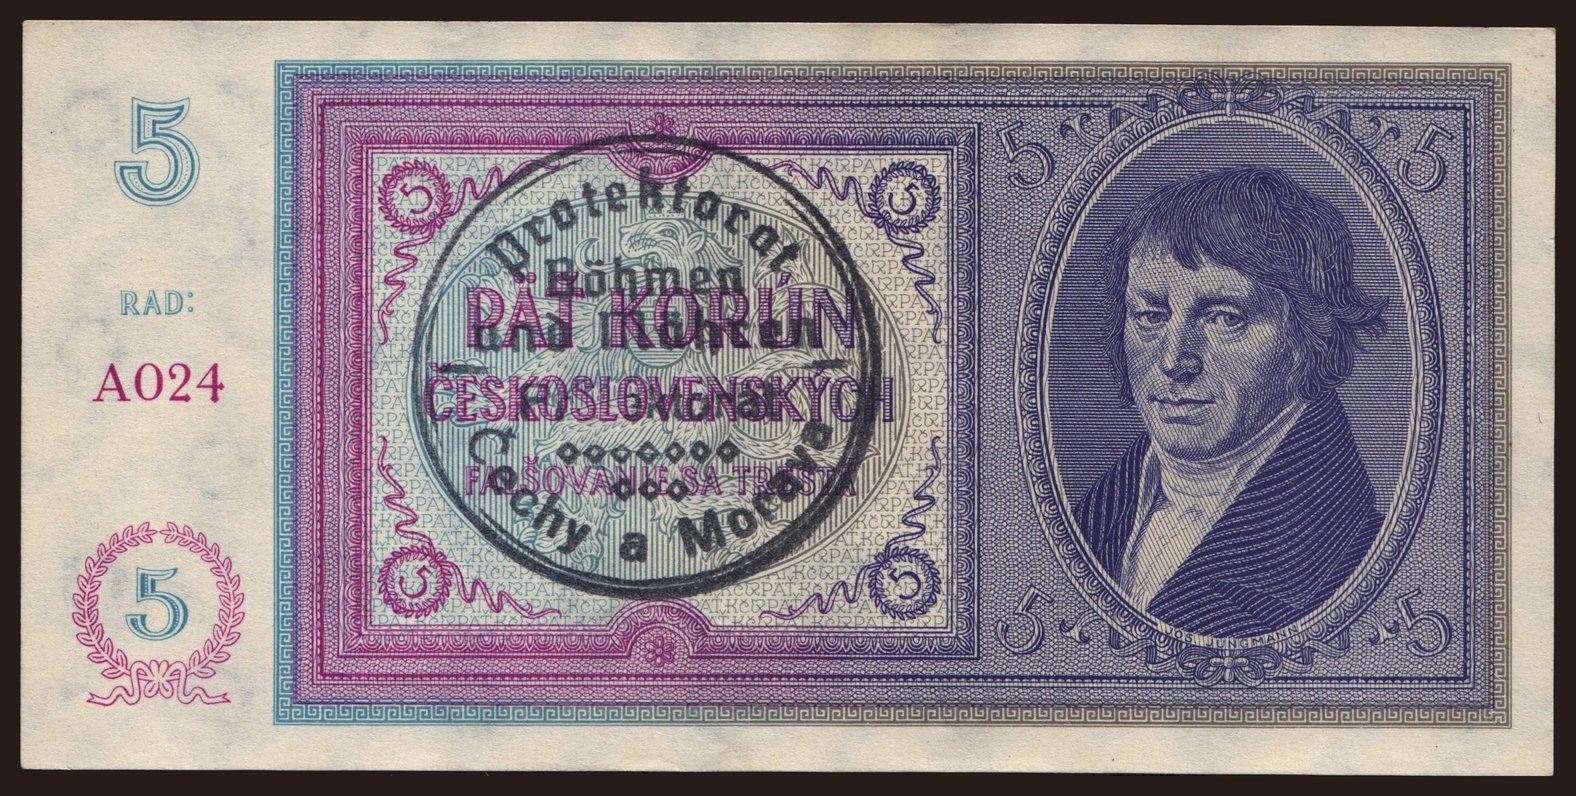 5 korun, 1938(40)